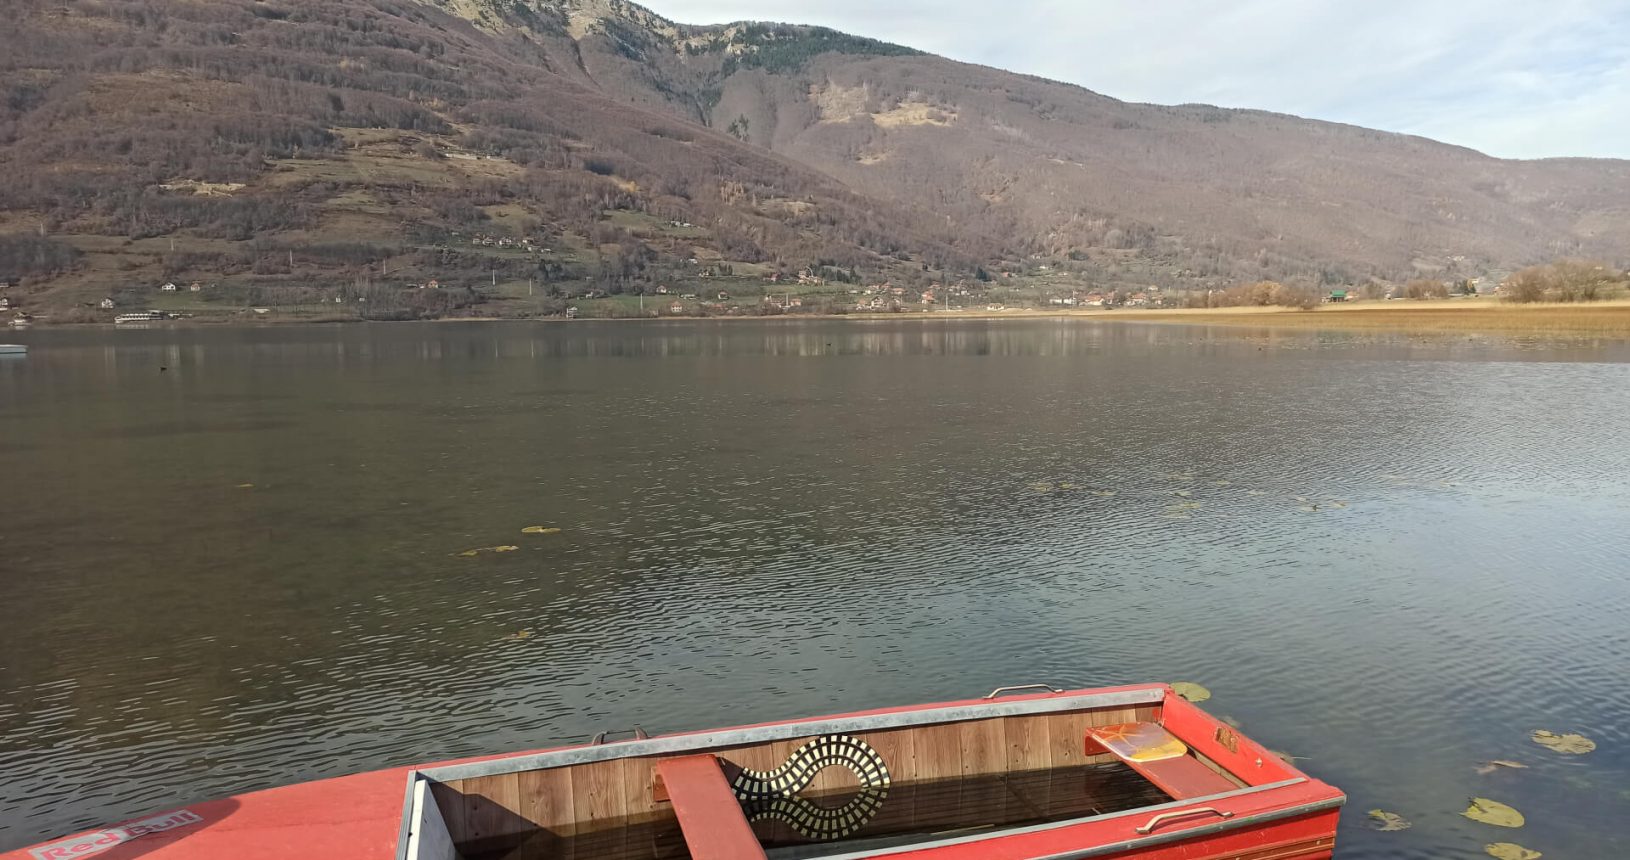 Lovely red boat in Plav lake